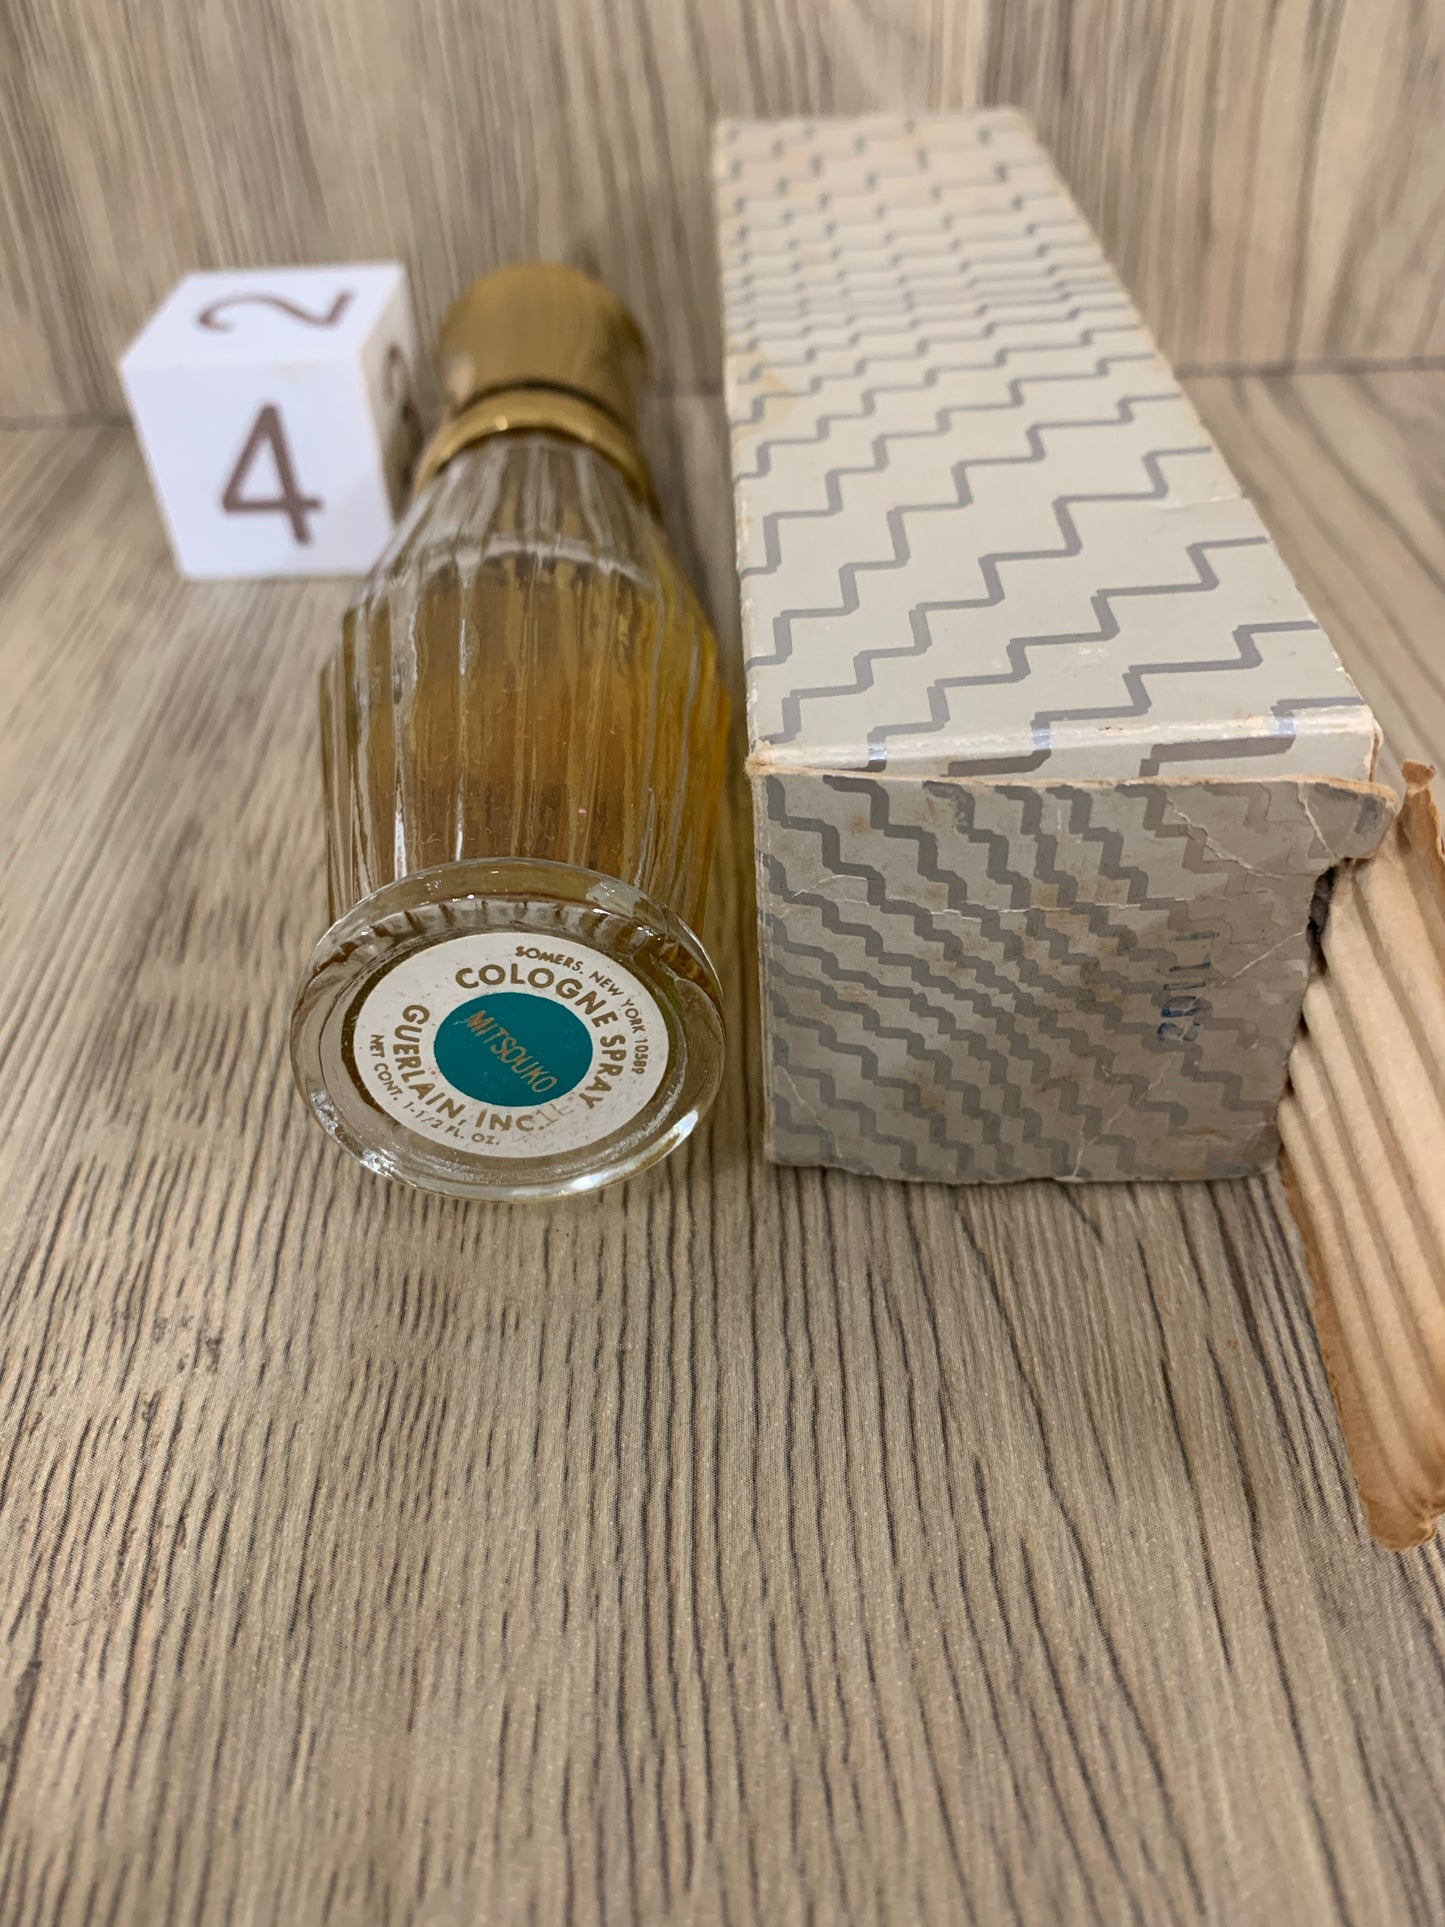 Used Guerlain Mitsouko 50ml, 45ml EDC Perfume - 12SEP22